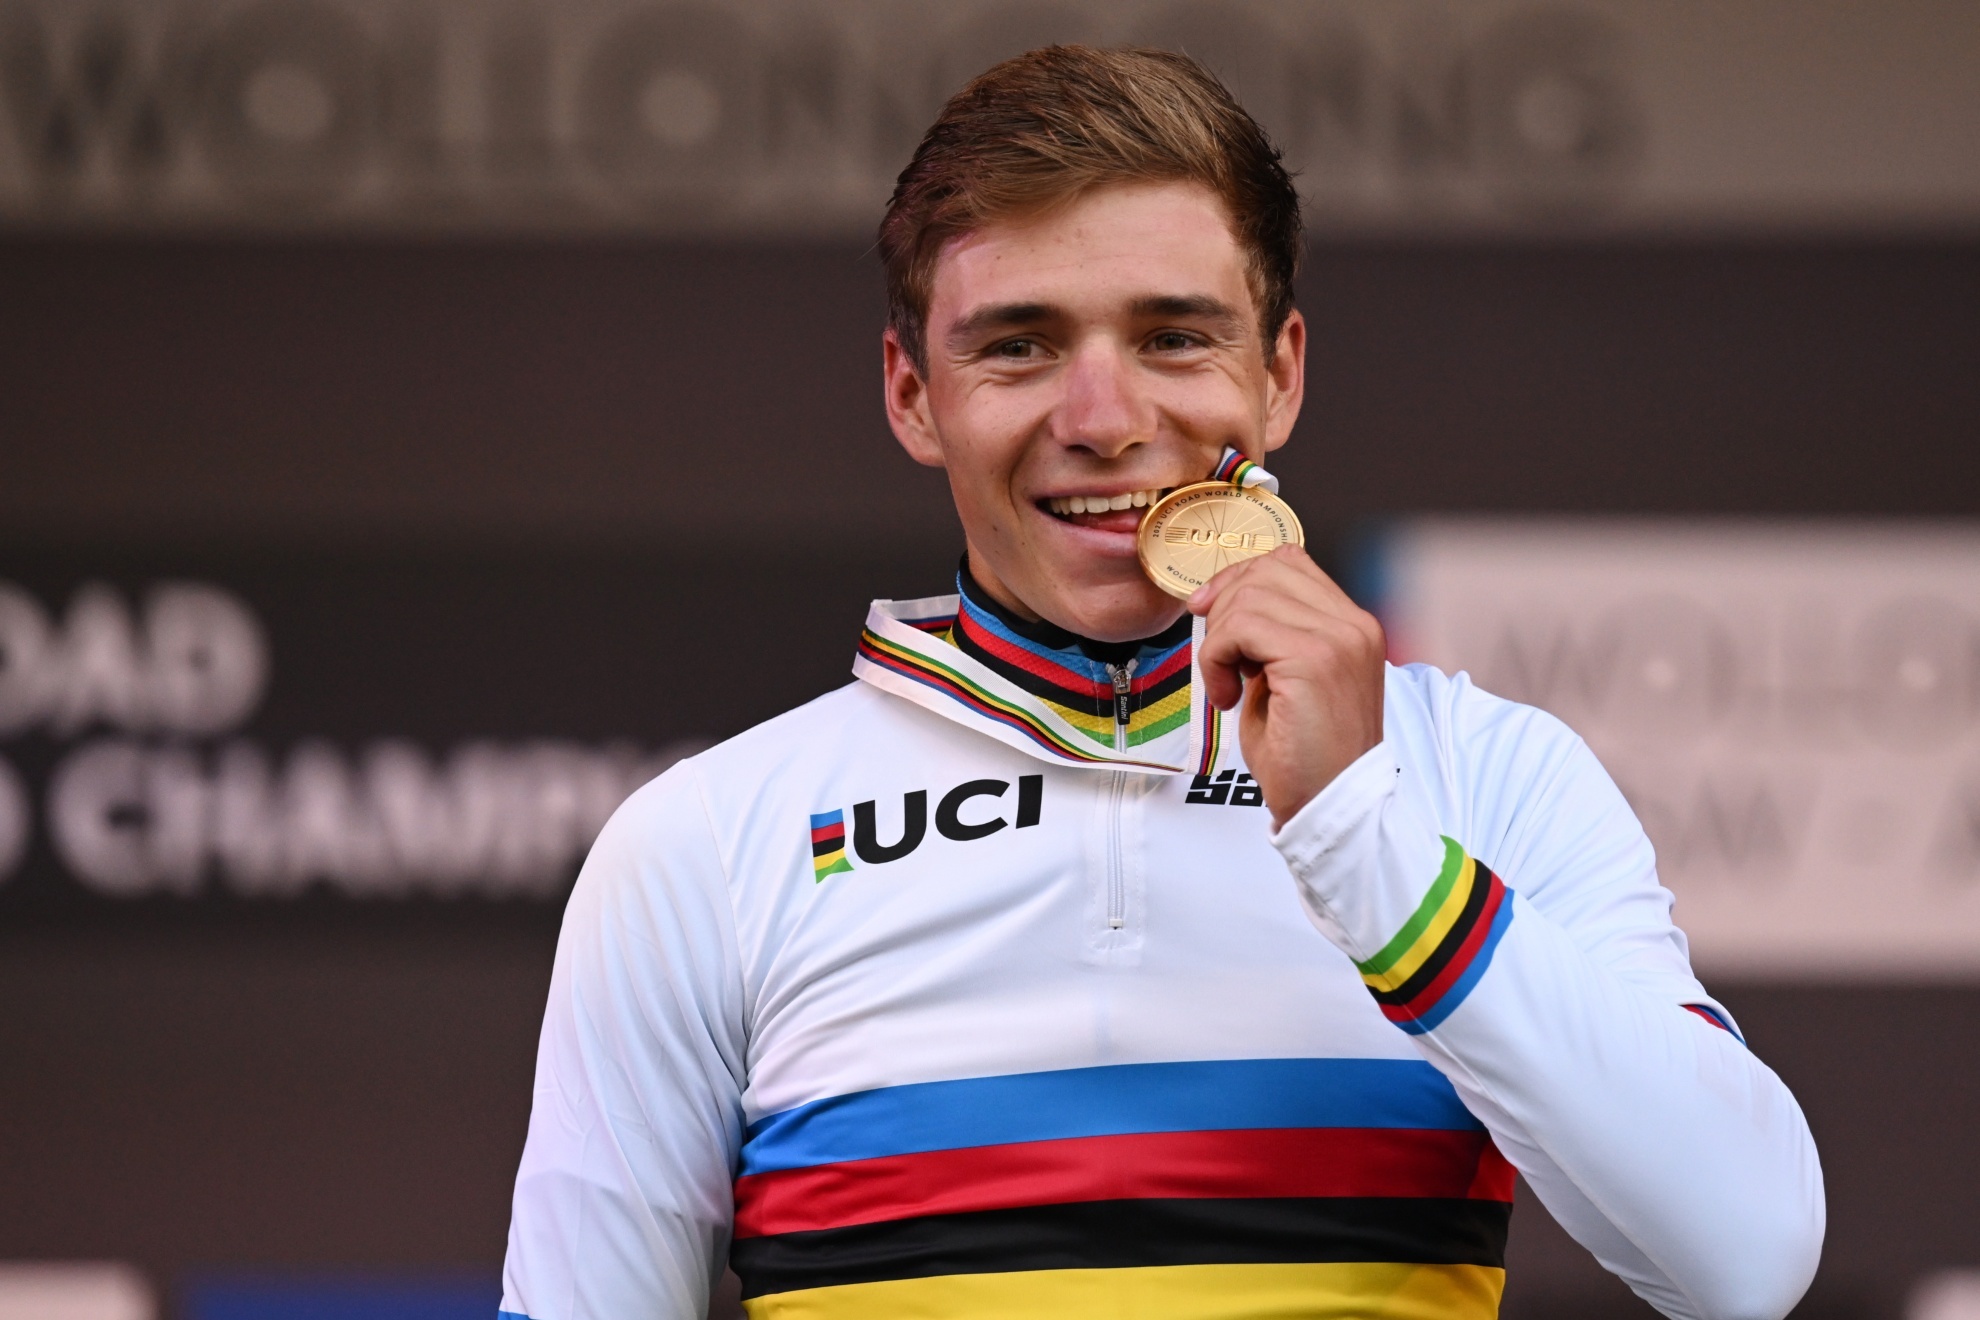 Remco Evenepoel muerde la medalla de oro tras ganar la prueba en ruta del reciente Mundial de ciclismo. Foto: EFE